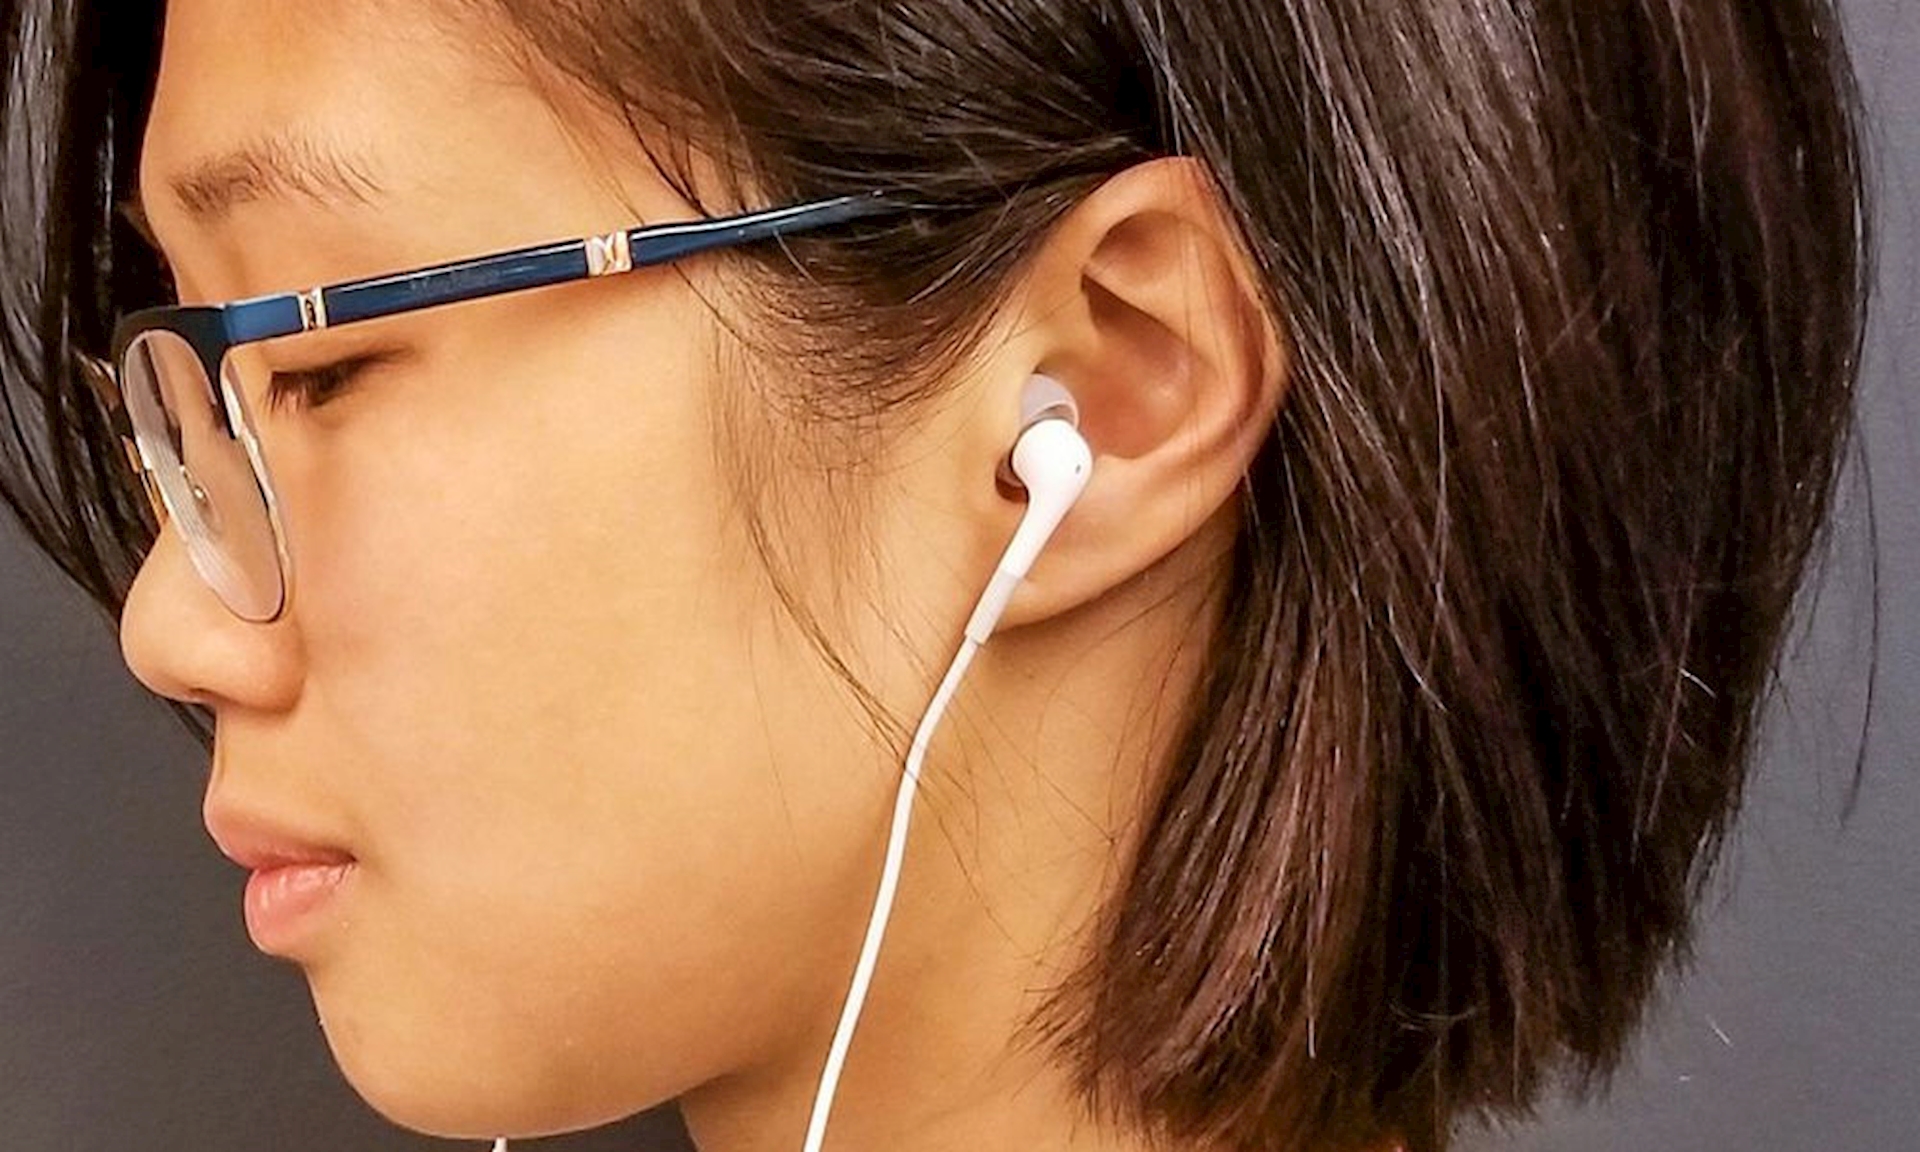 Đeo tai nghe quá lâu gây các bệnh về tai